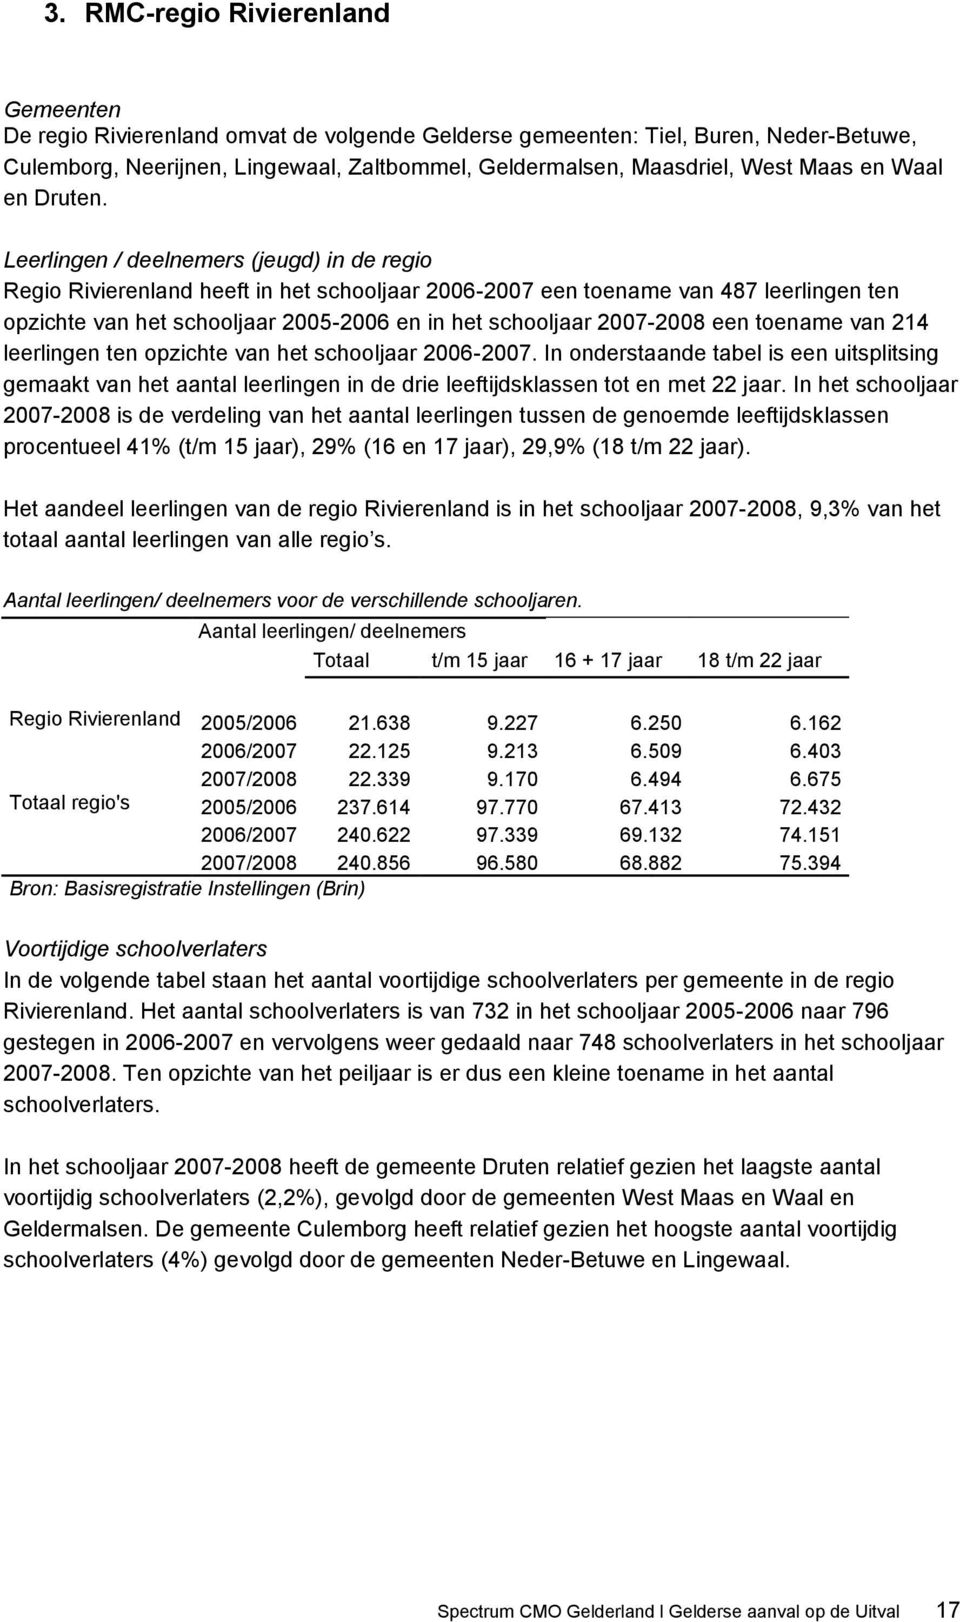 Leerlingen / deelnemers (jeugd) in de regio Regio Rivierenland heeft in het schooljaar 2006-2007 een toename van 487 leerlingen ten opzichte van het schooljaar 2005-2006 en in het schooljaar